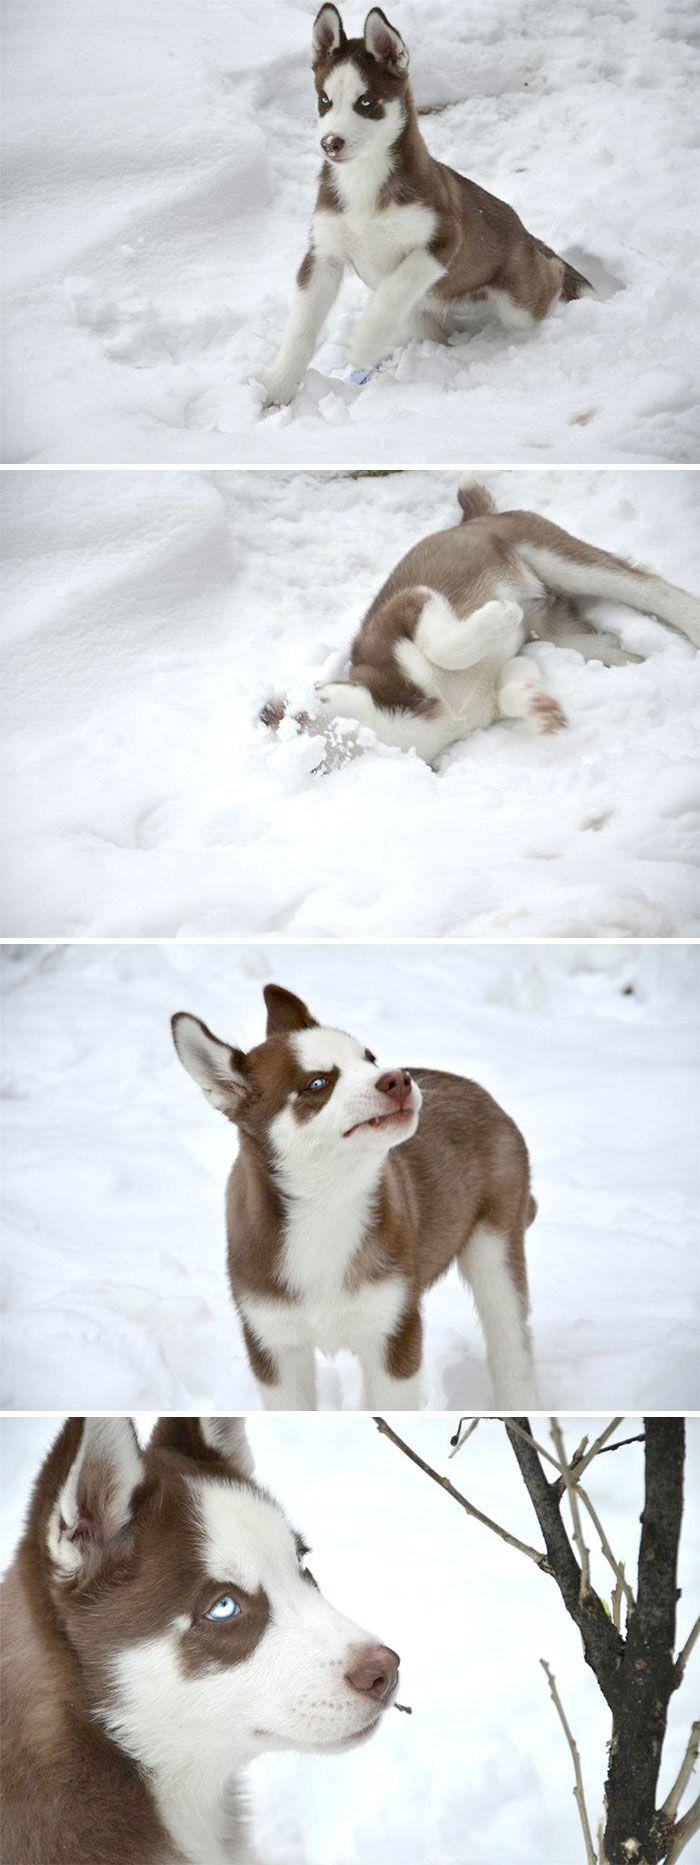 Sniegs nemaz nav tik slikts  Autors: Zibenzellis69 15 fotogrāfijas ar dzīvniekiem, kuri pirmoreiz izgāja pastaigā pa sniegu